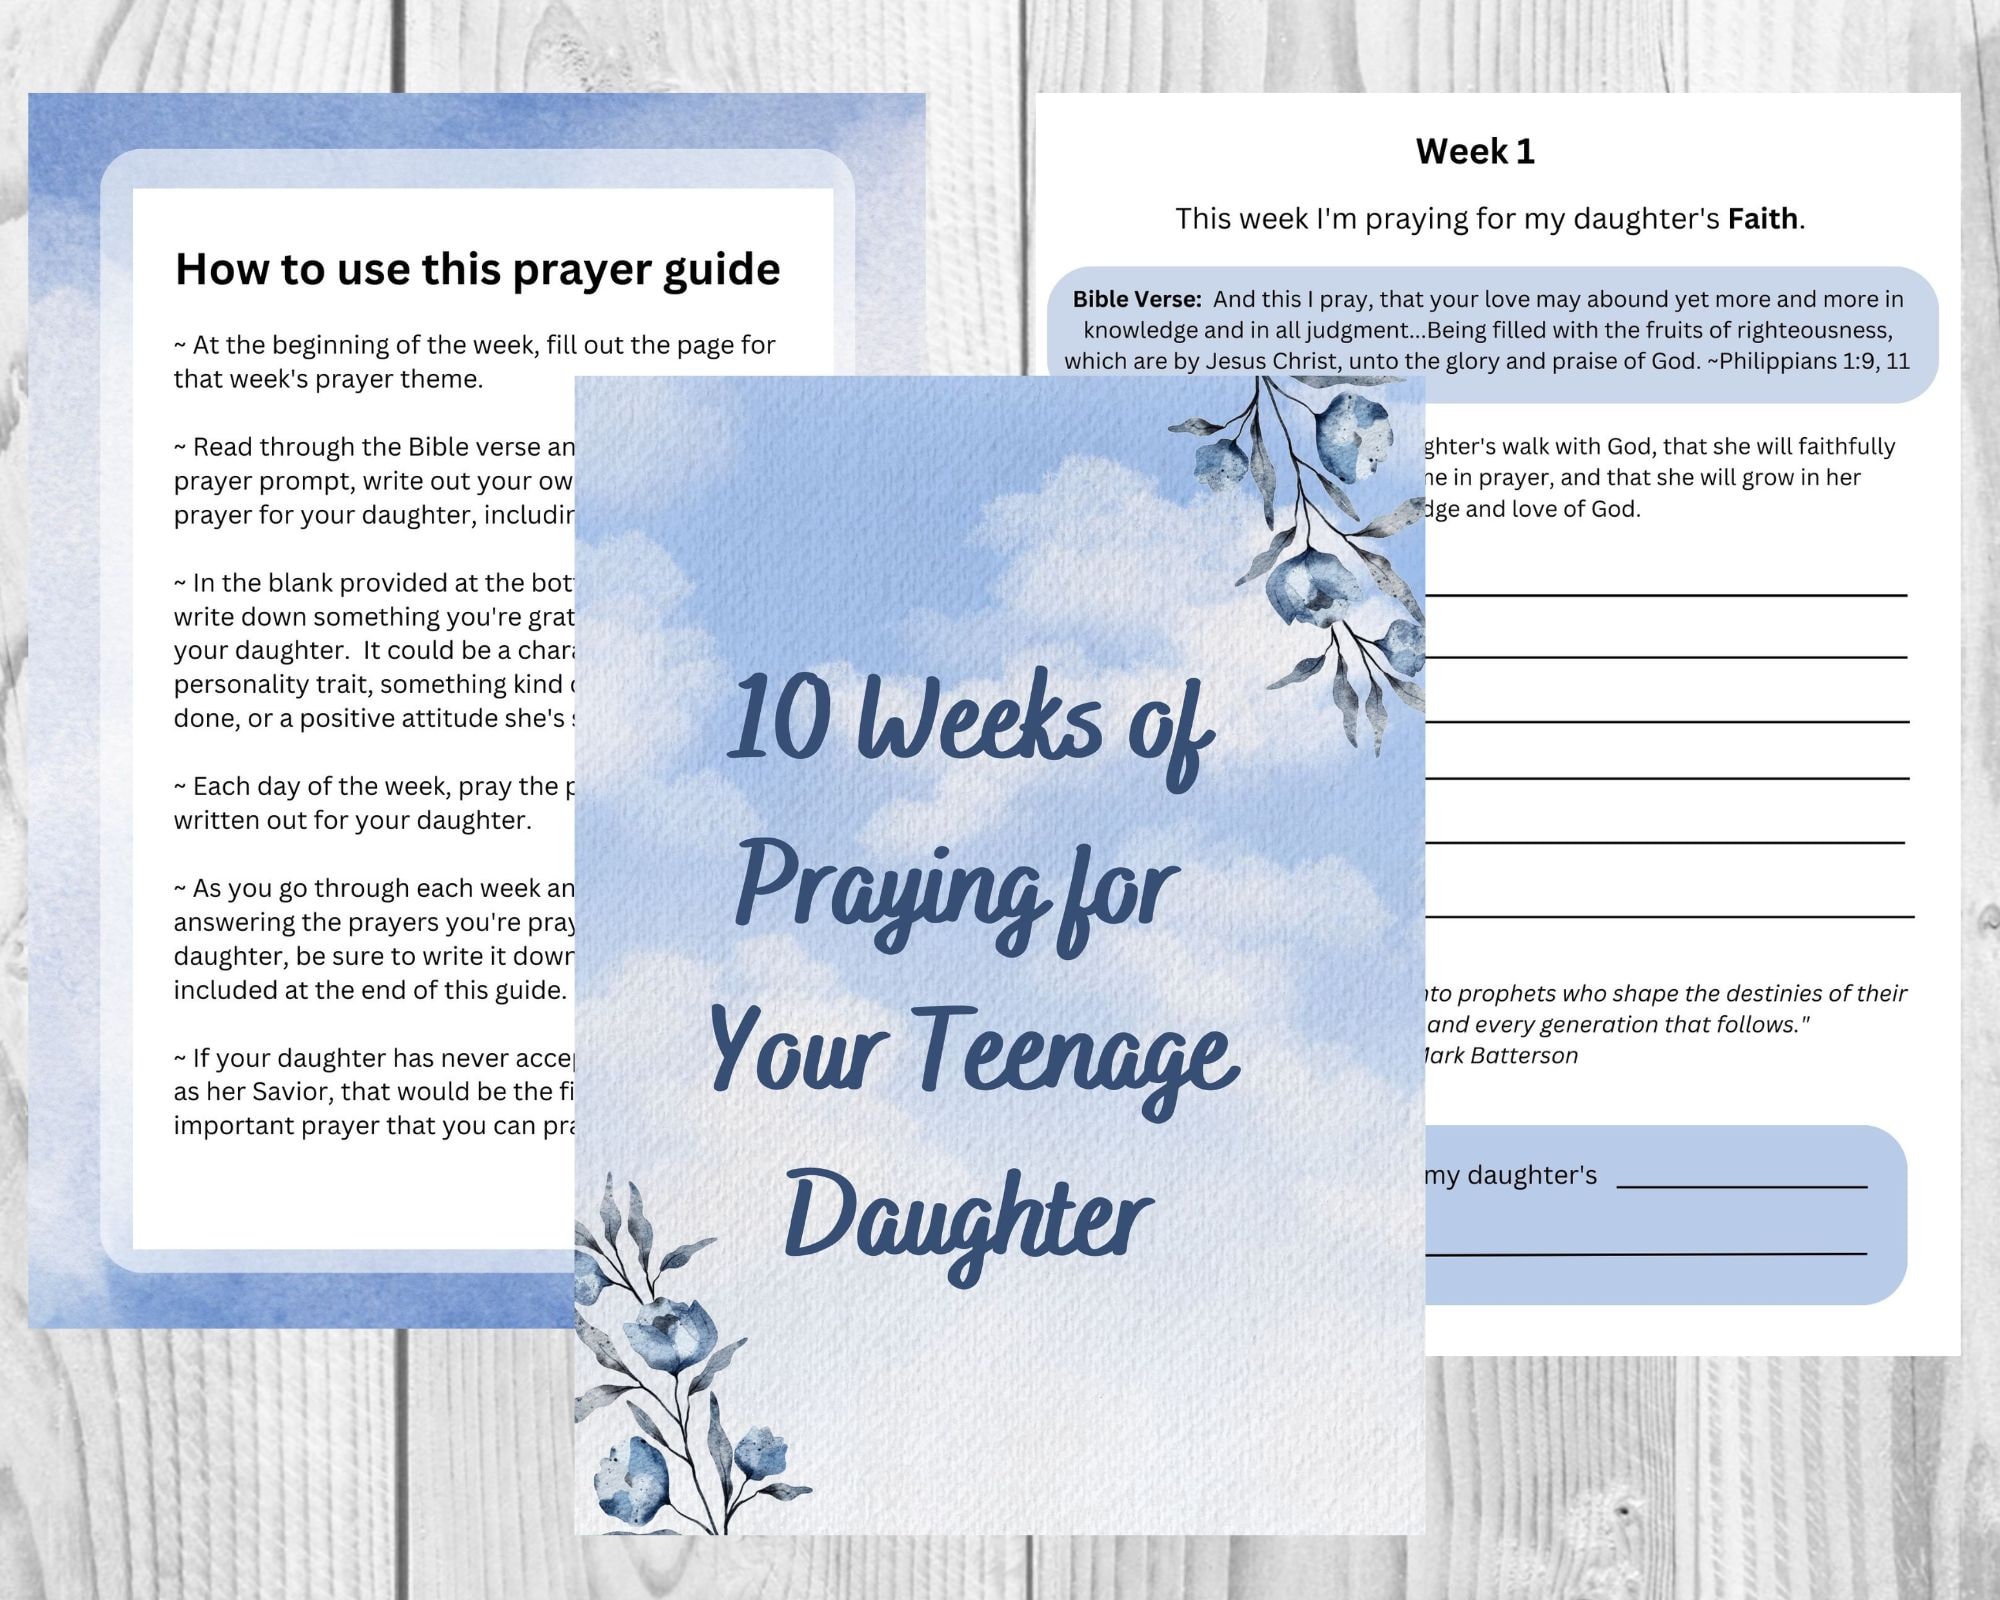 My Faith Journal for Teen Girls: 9781432130534 